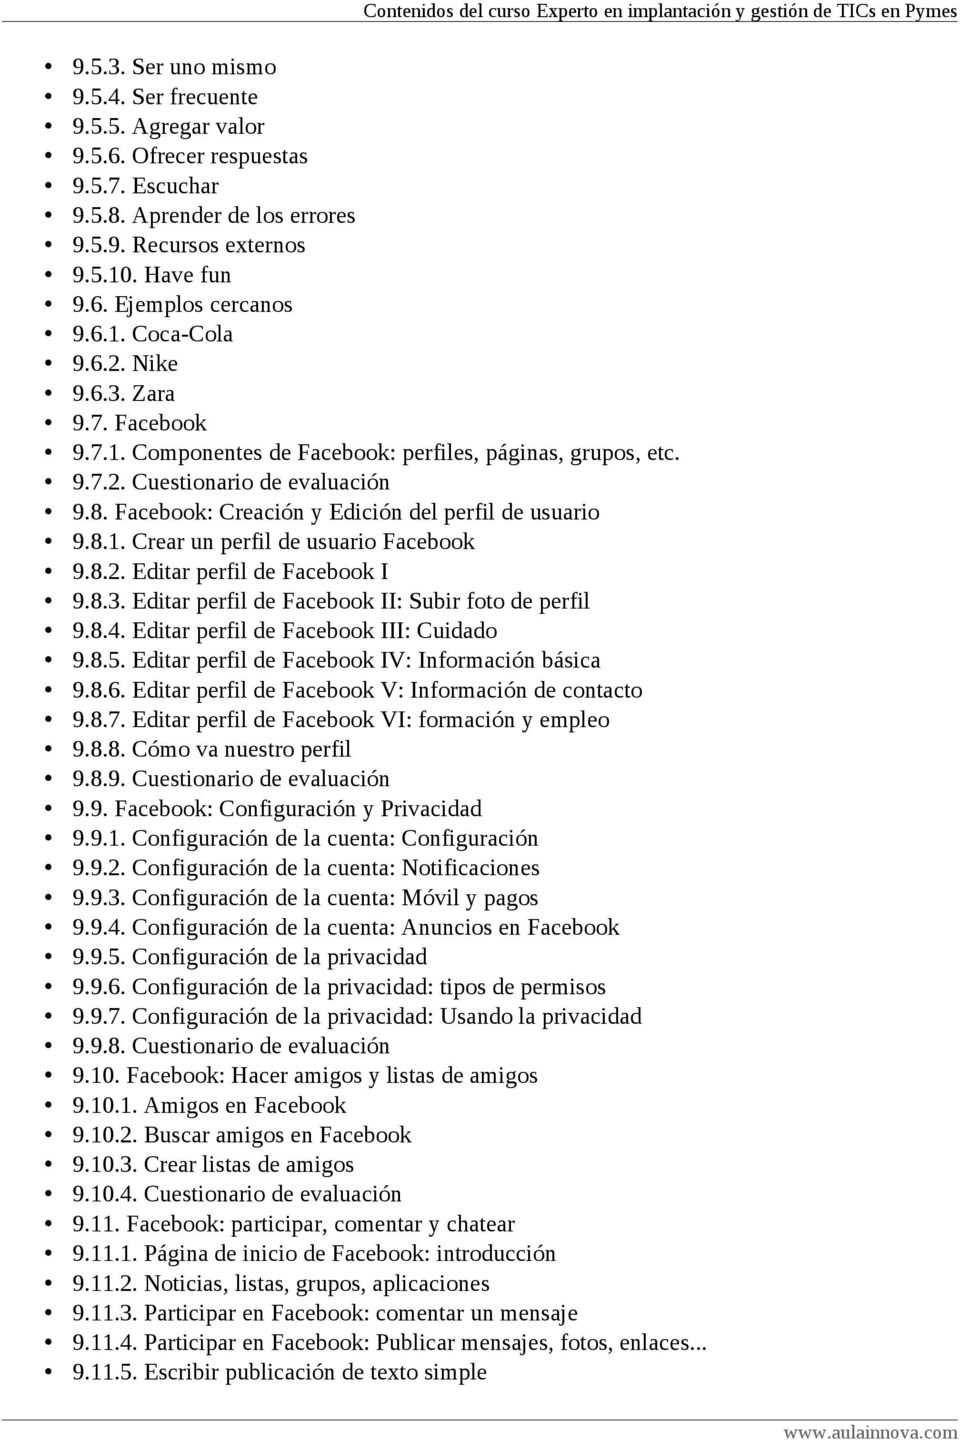 Facebook: Creación y Edición del perfil de usuario 9.8.1. Crear un perfil de usuario Facebook 9.8.2. Editar perfil de Facebook I 9.8.3. Editar perfil de Facebook II: Subir foto de perfil 9.8.4.